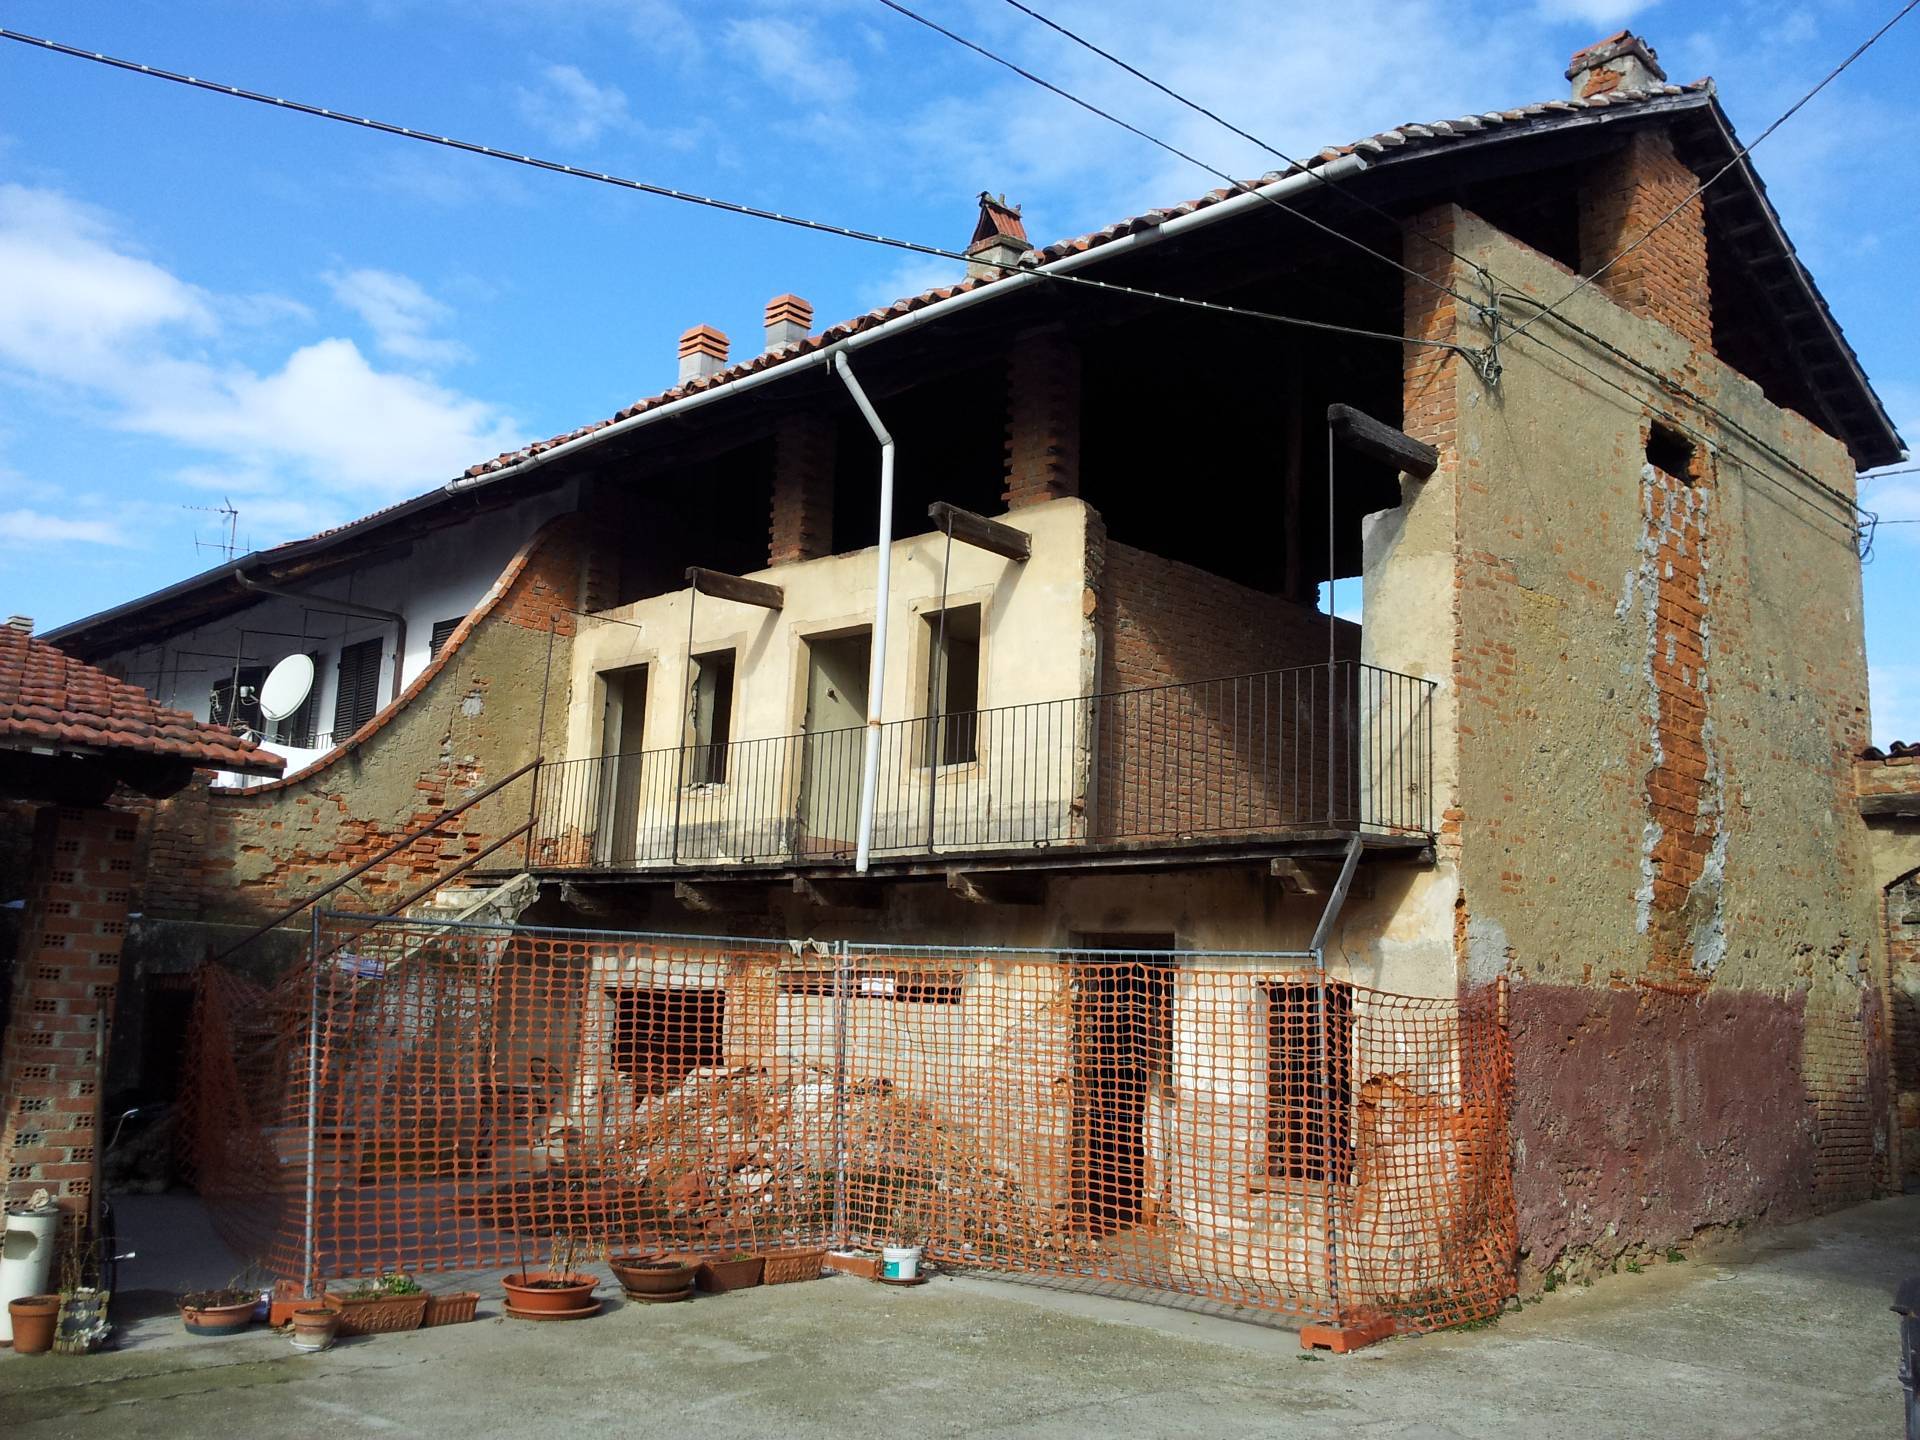 Rustico / Casale in vendita a Caluso, 5 locali, prezzo € 23.000 | PortaleAgenzieImmobiliari.it